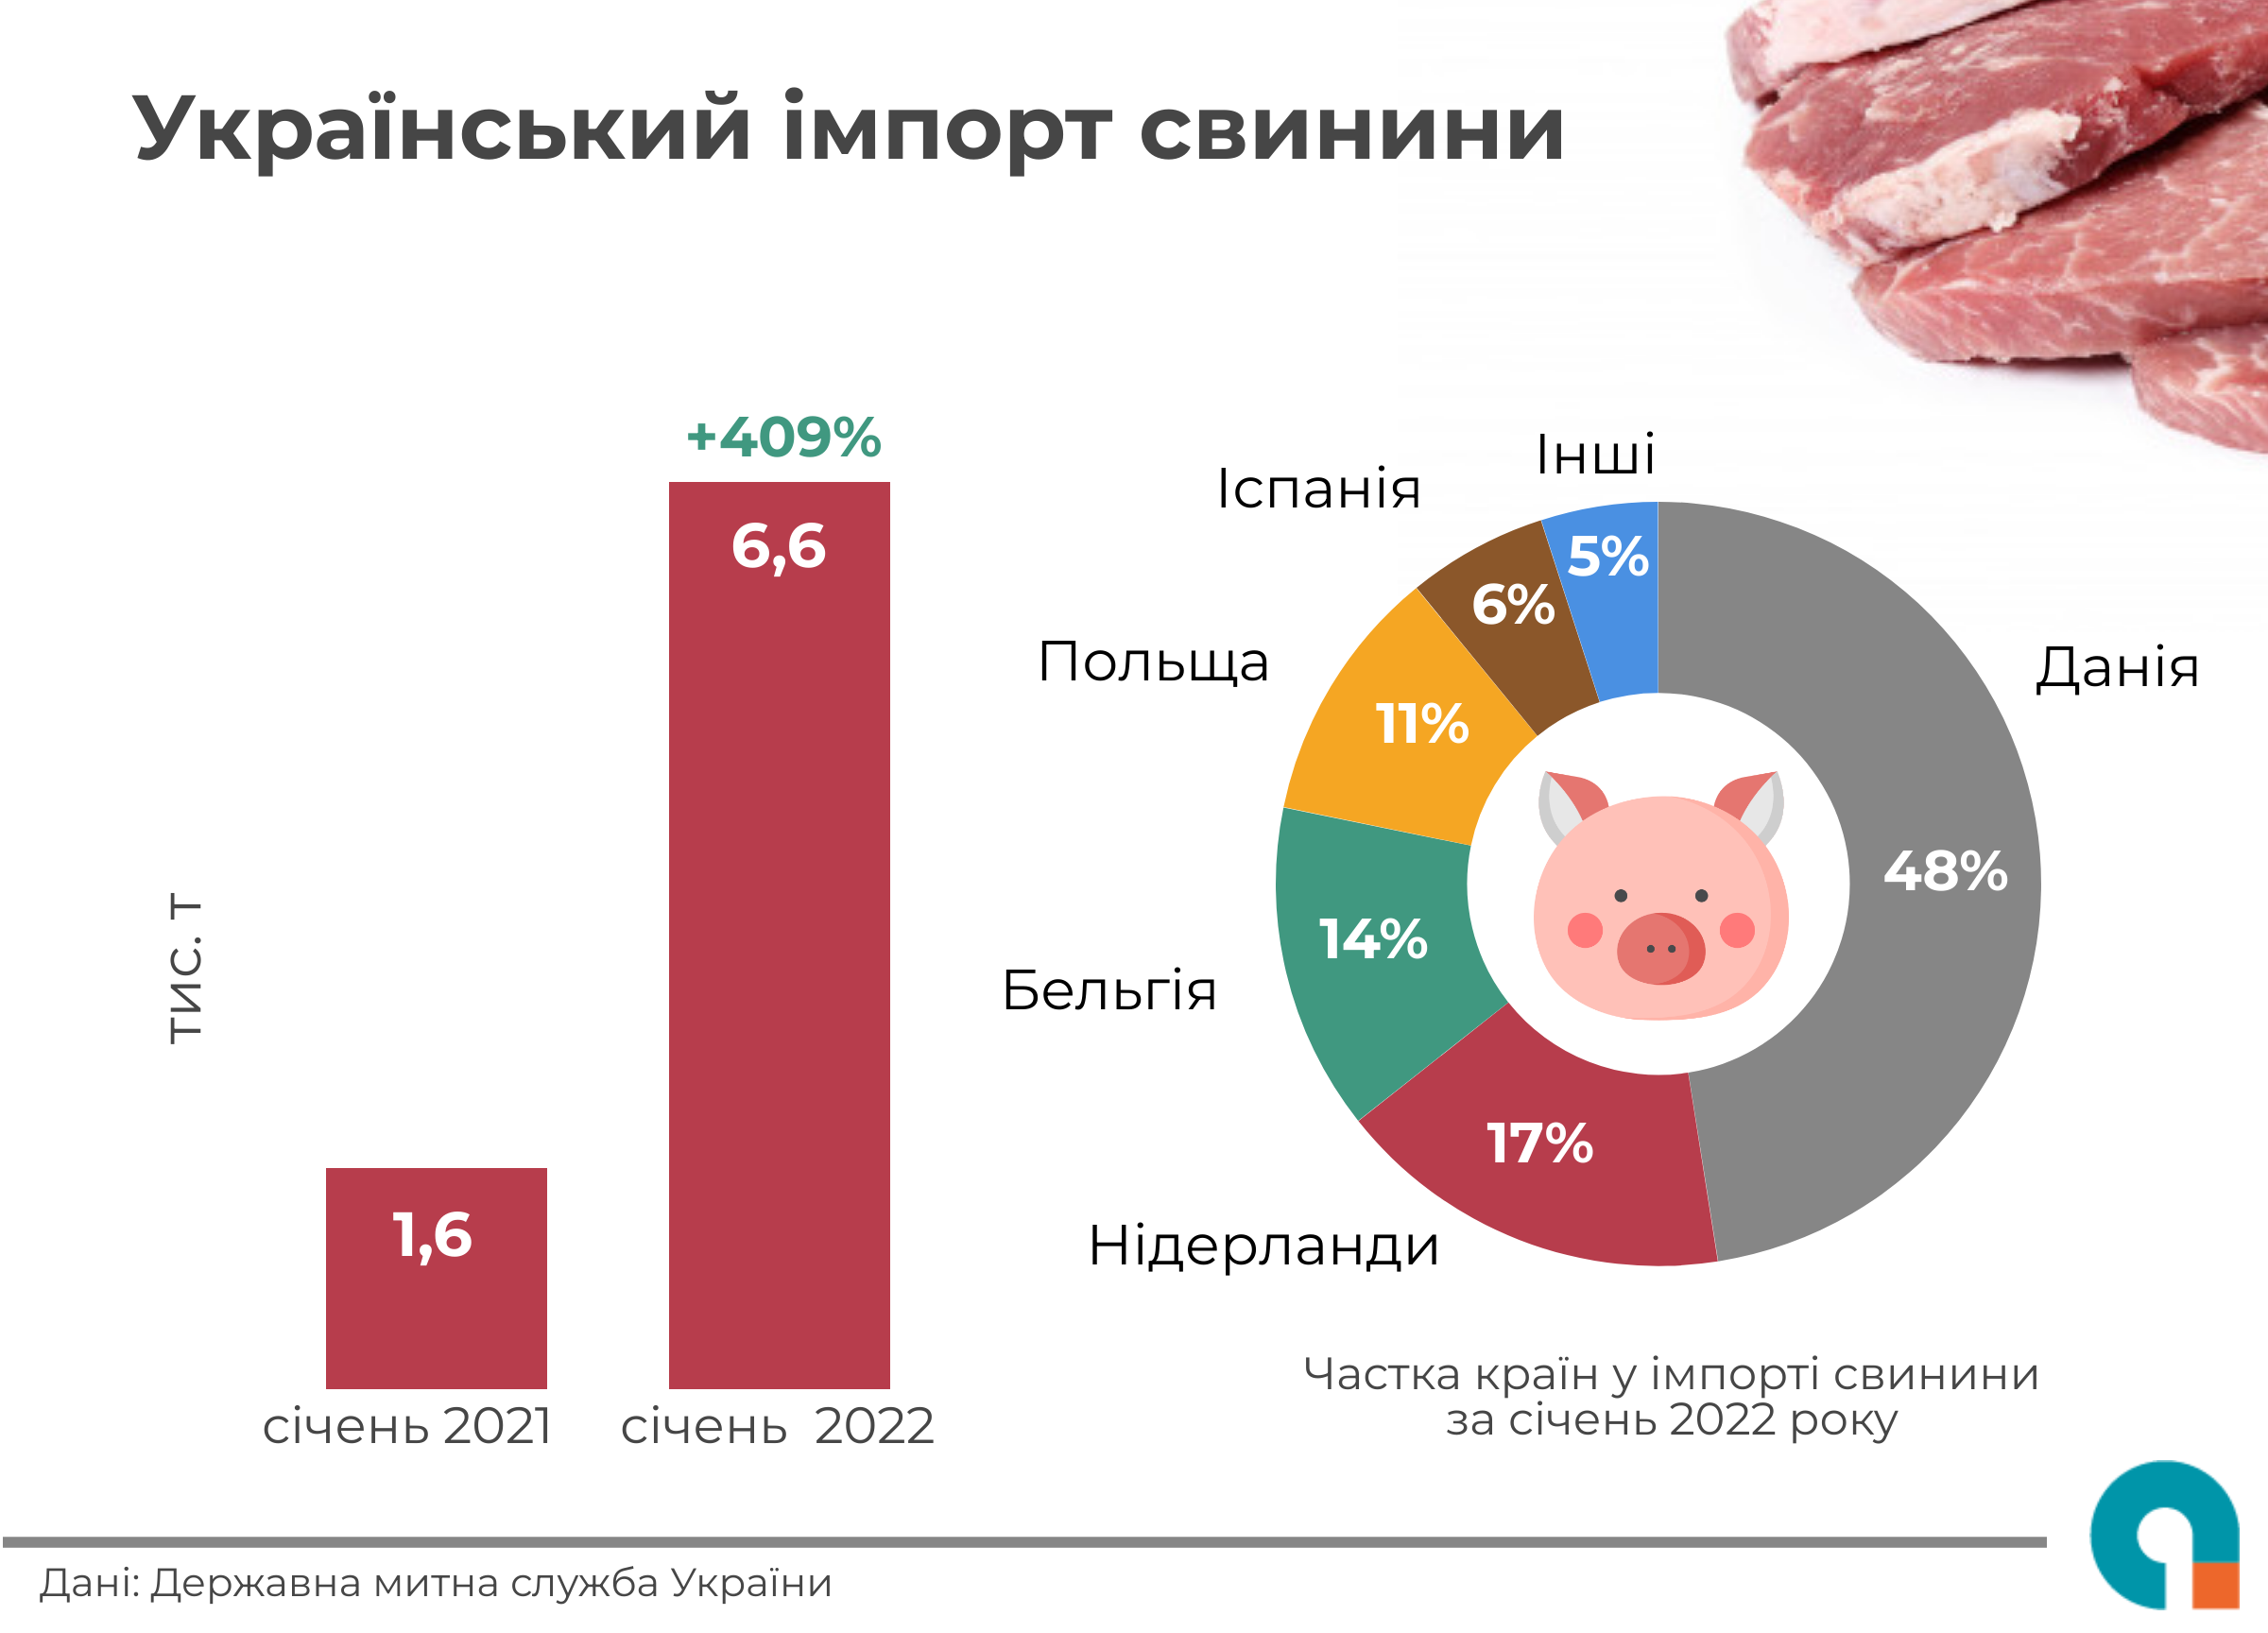 Инфографика импорта свинины